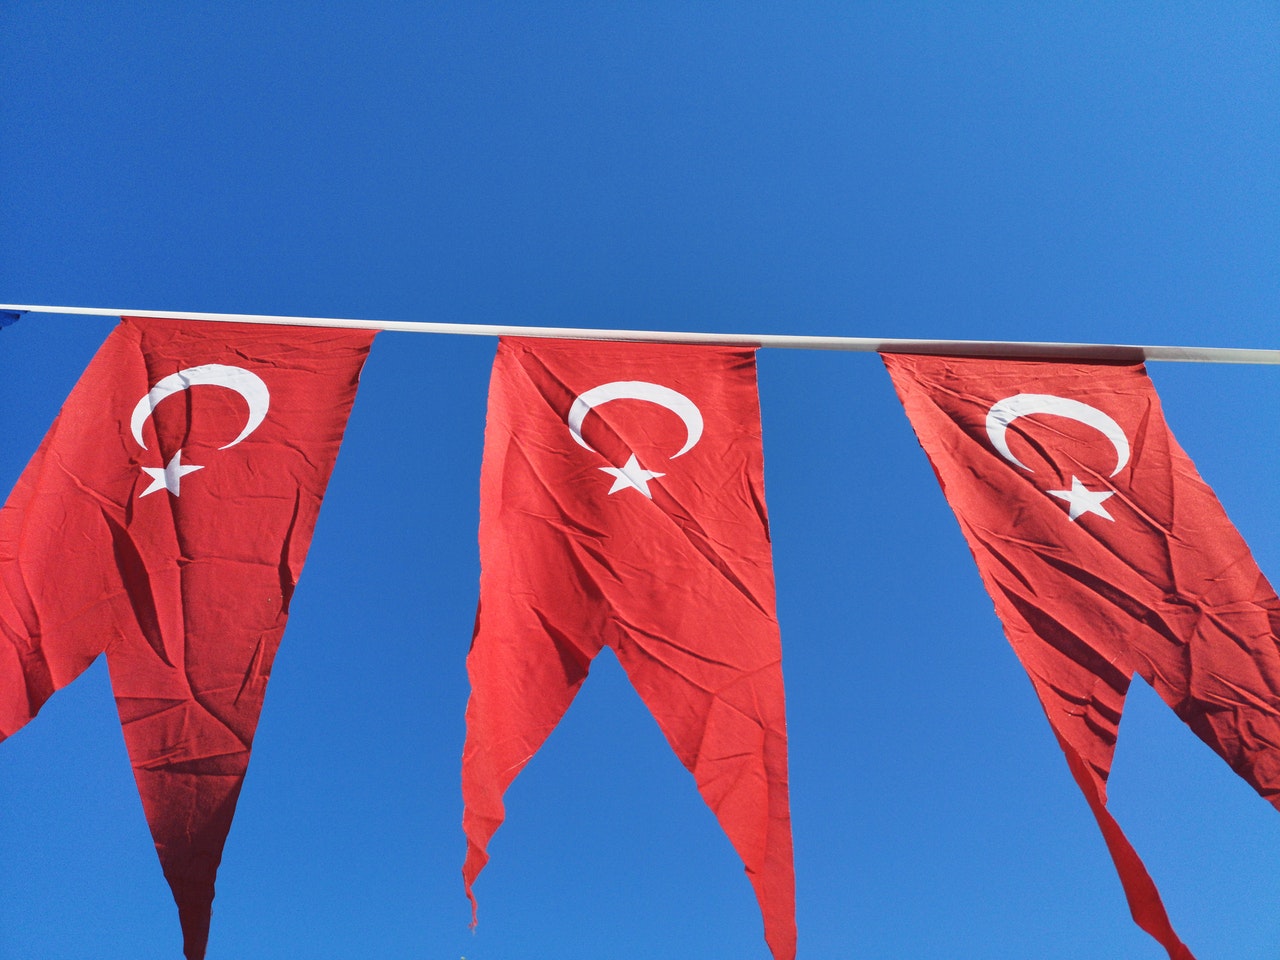 土耳其国旗映衬着蓝天